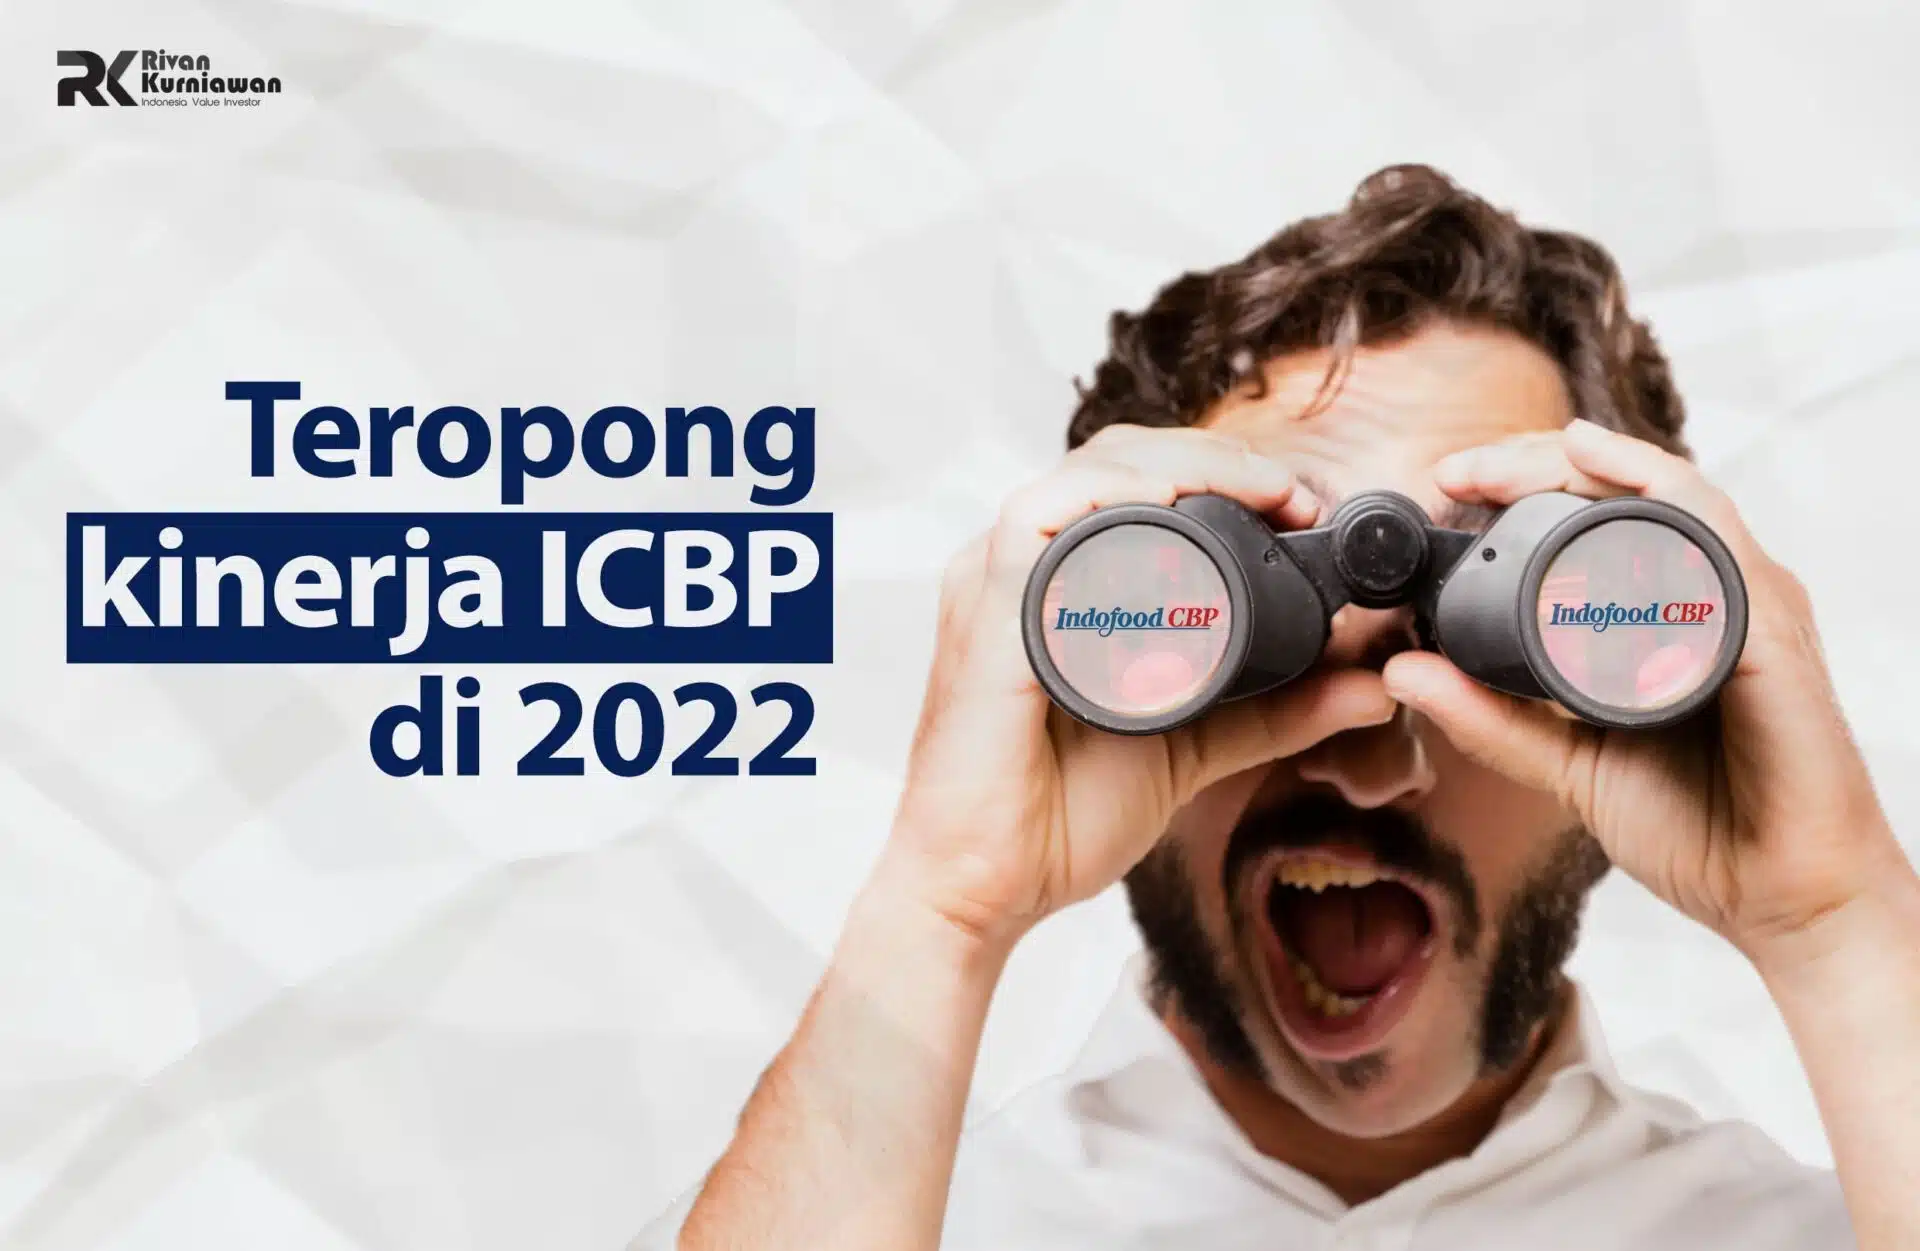 Teropong Kinerja ICBP di 2022